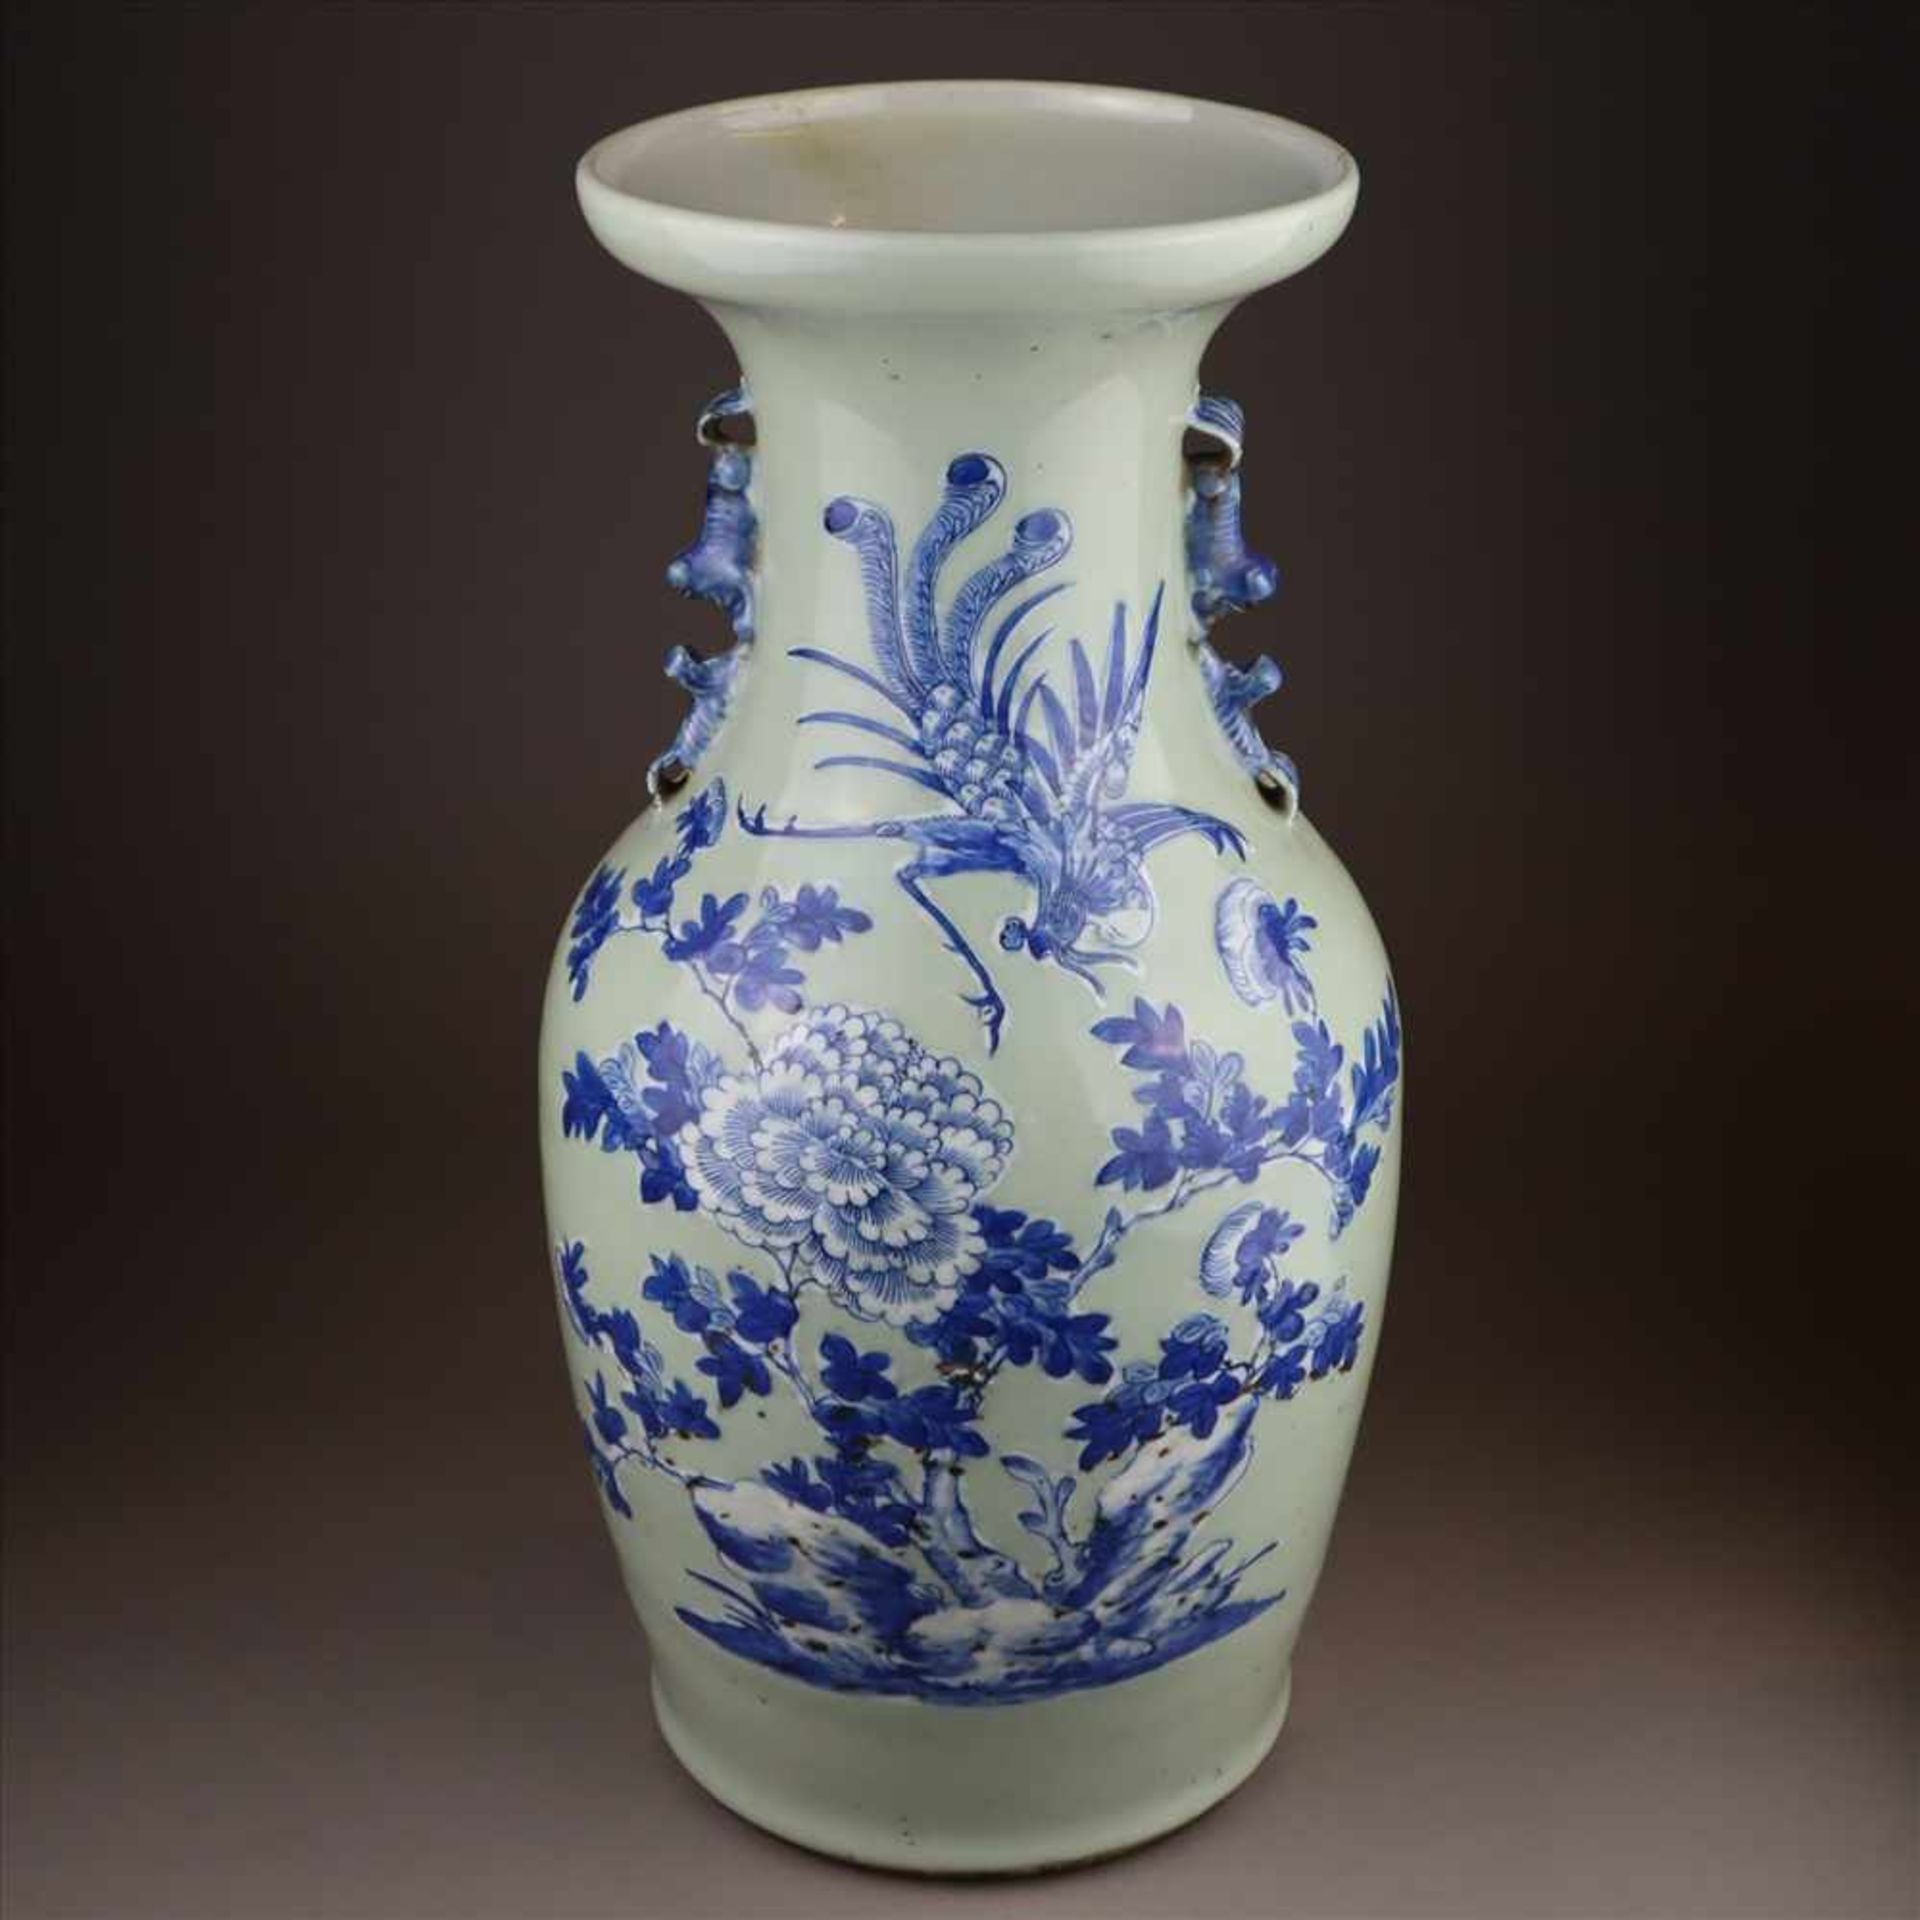 Bodenvase - China, Porzellan mit Blau-Weiß Dekor auf Seladongrund, schauseitig Floraldekor mit